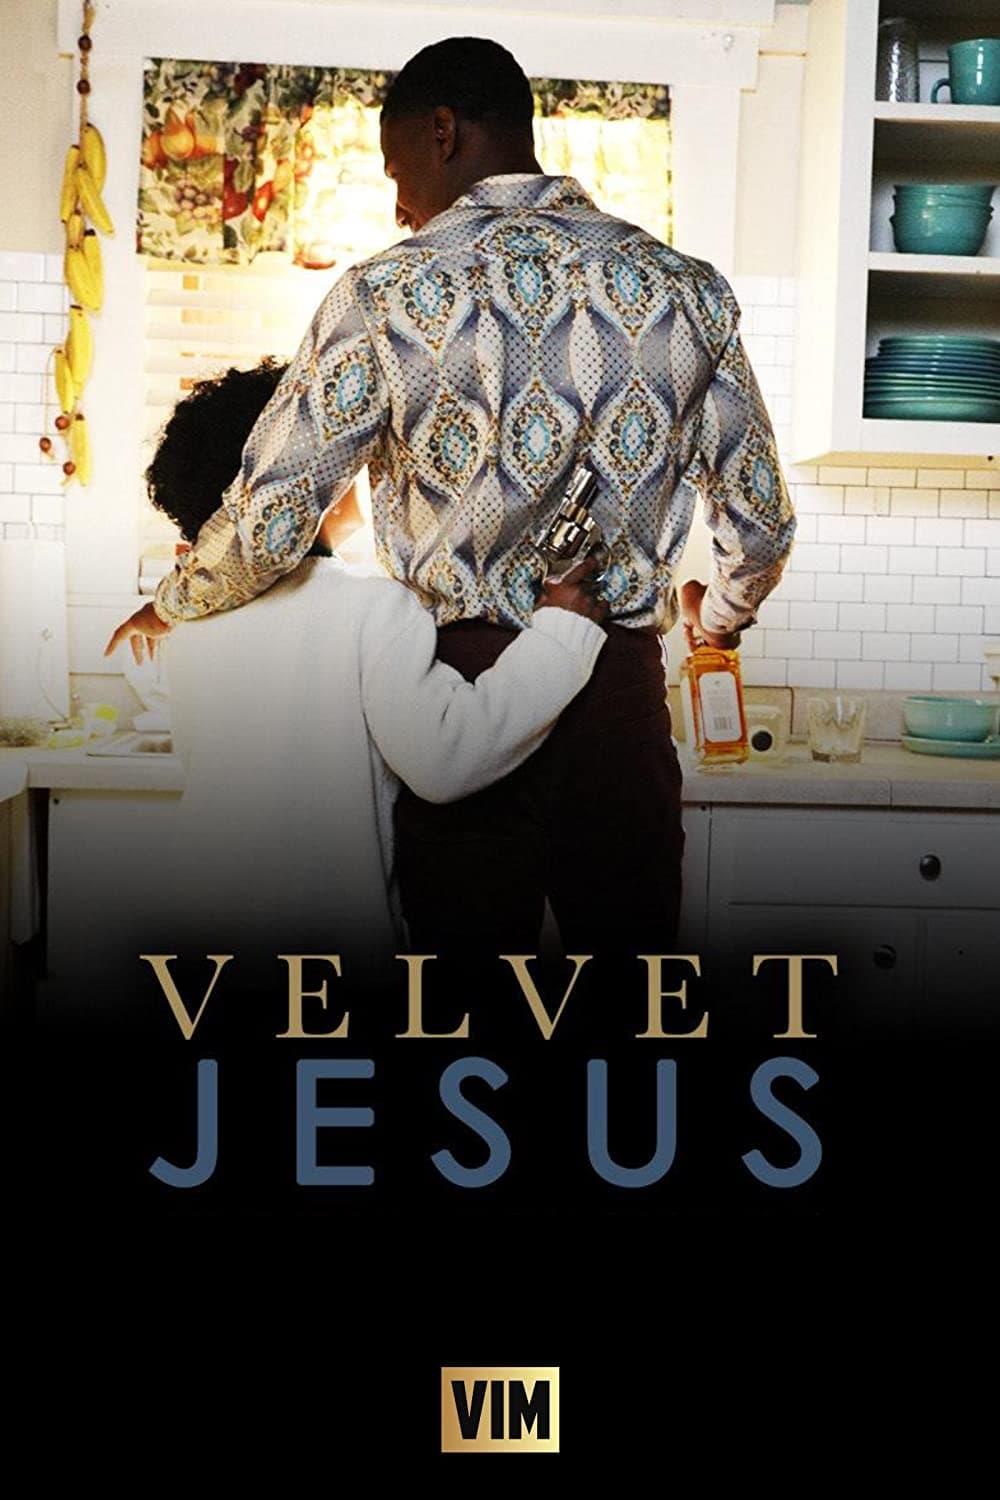 Velvet Jesus poster